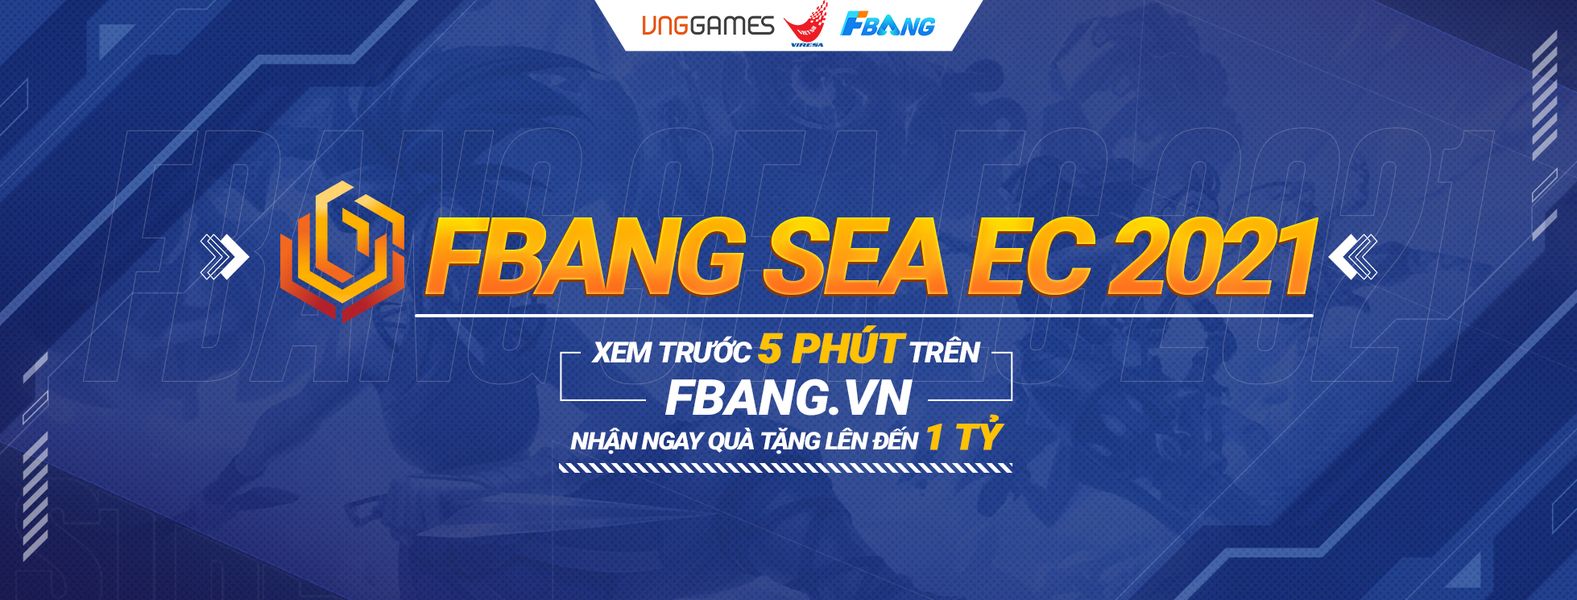 FBANG - Nhà tài trợ chính của FBANG SEA EC 2021 - họ là ai?